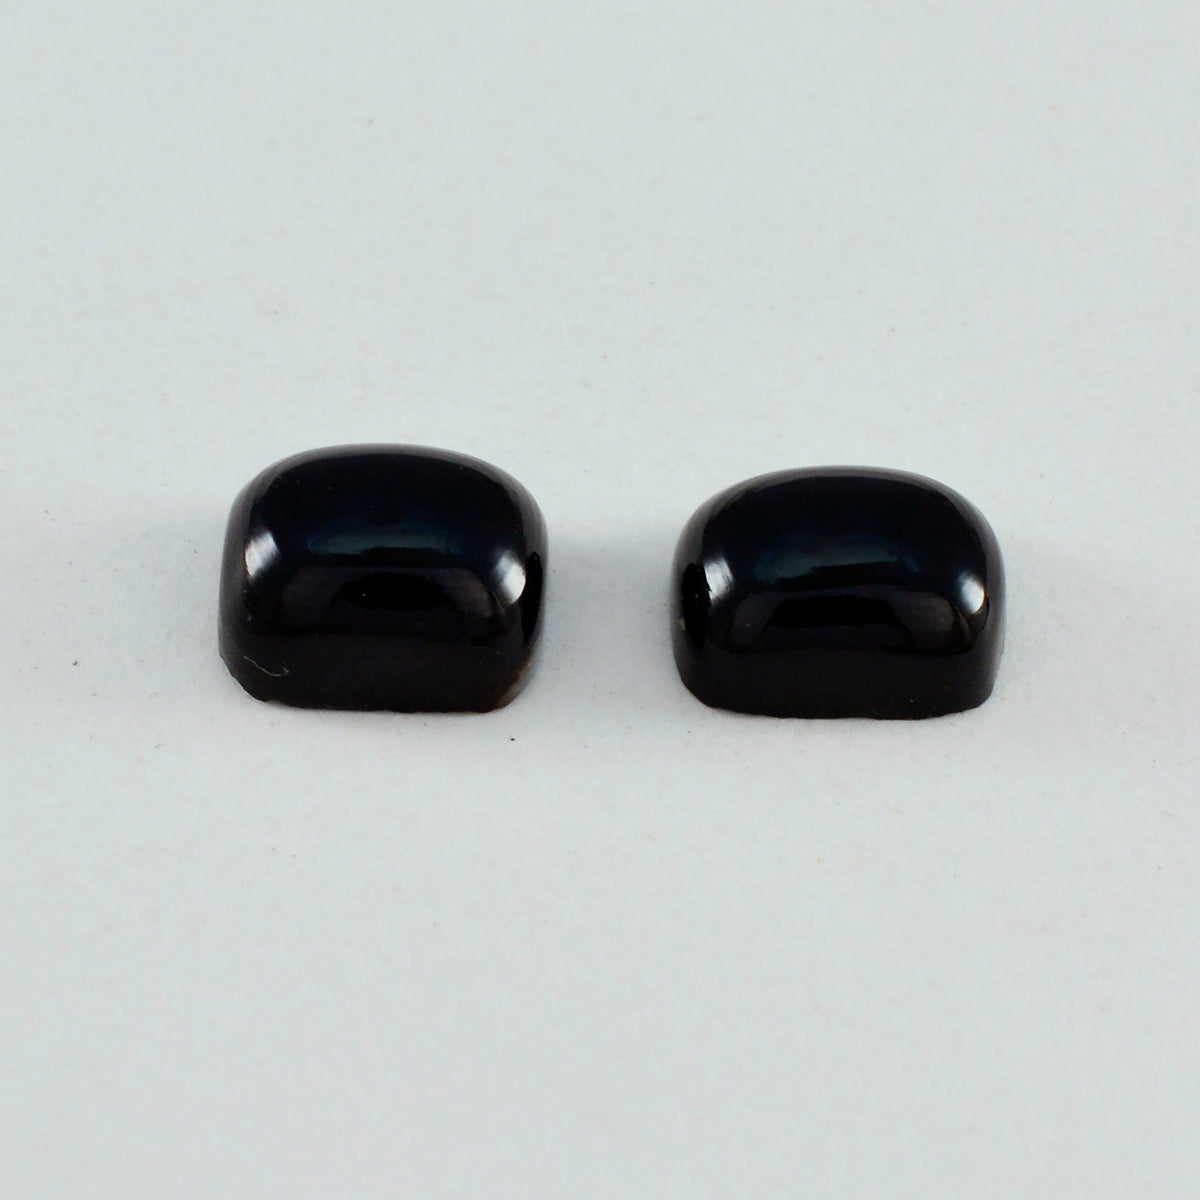 Riyogems 1PC zwarte onyx cabochon 8x10 mm achthoekige vorm mooie kwaliteit losse edelsteen